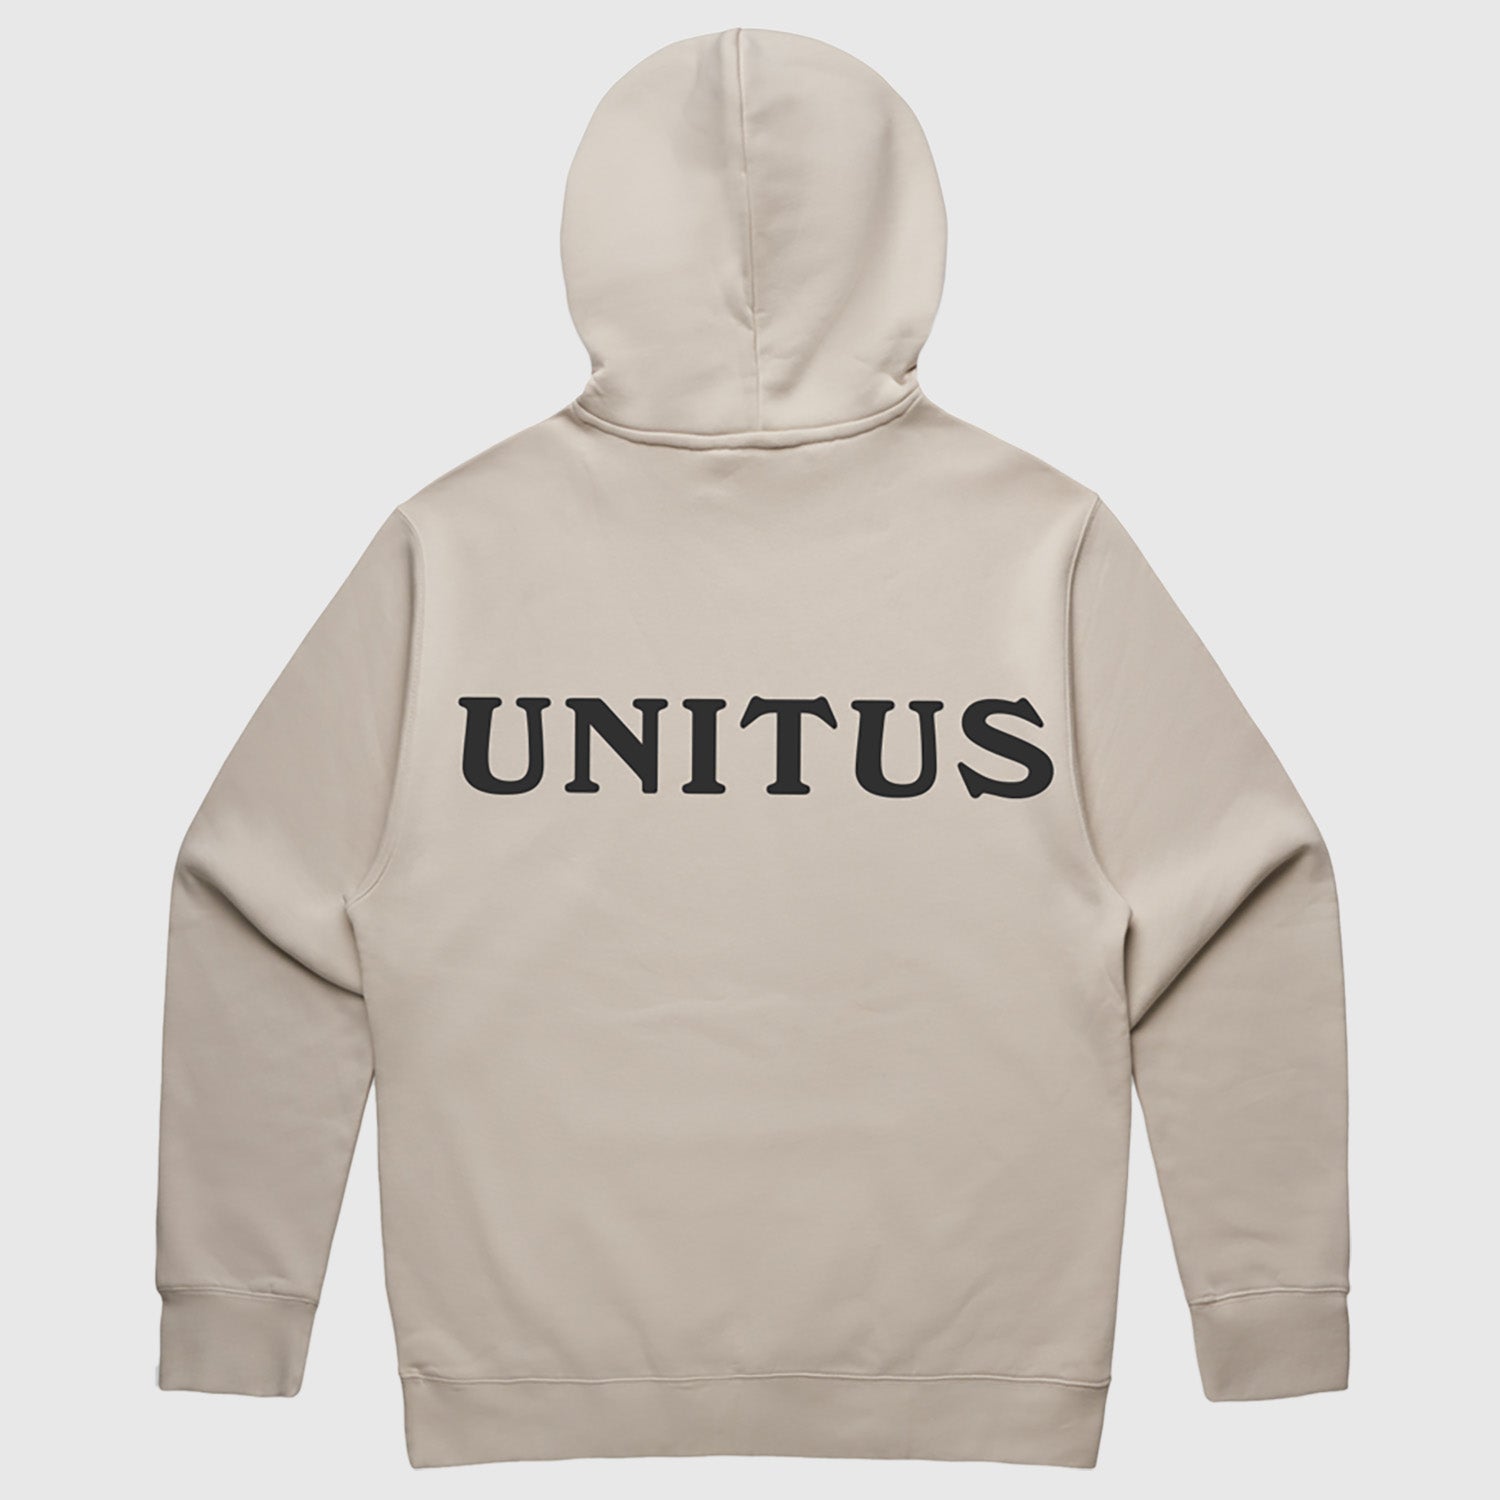 UNITUS